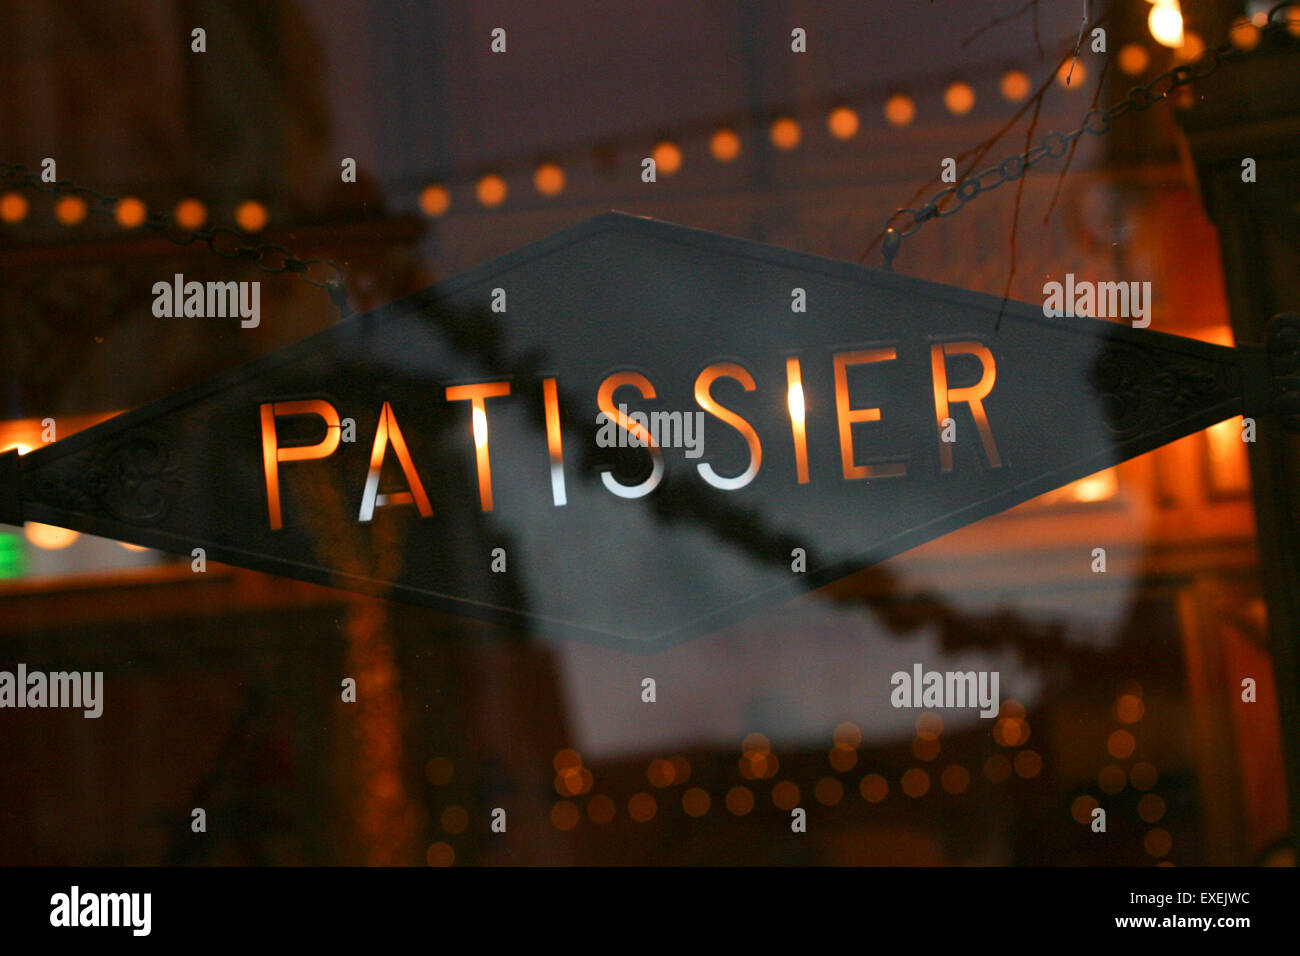 Une pâtisserie Pastry Shop affiches de fenêtre à la place de théâtre, Lille, France. Banque D'Images